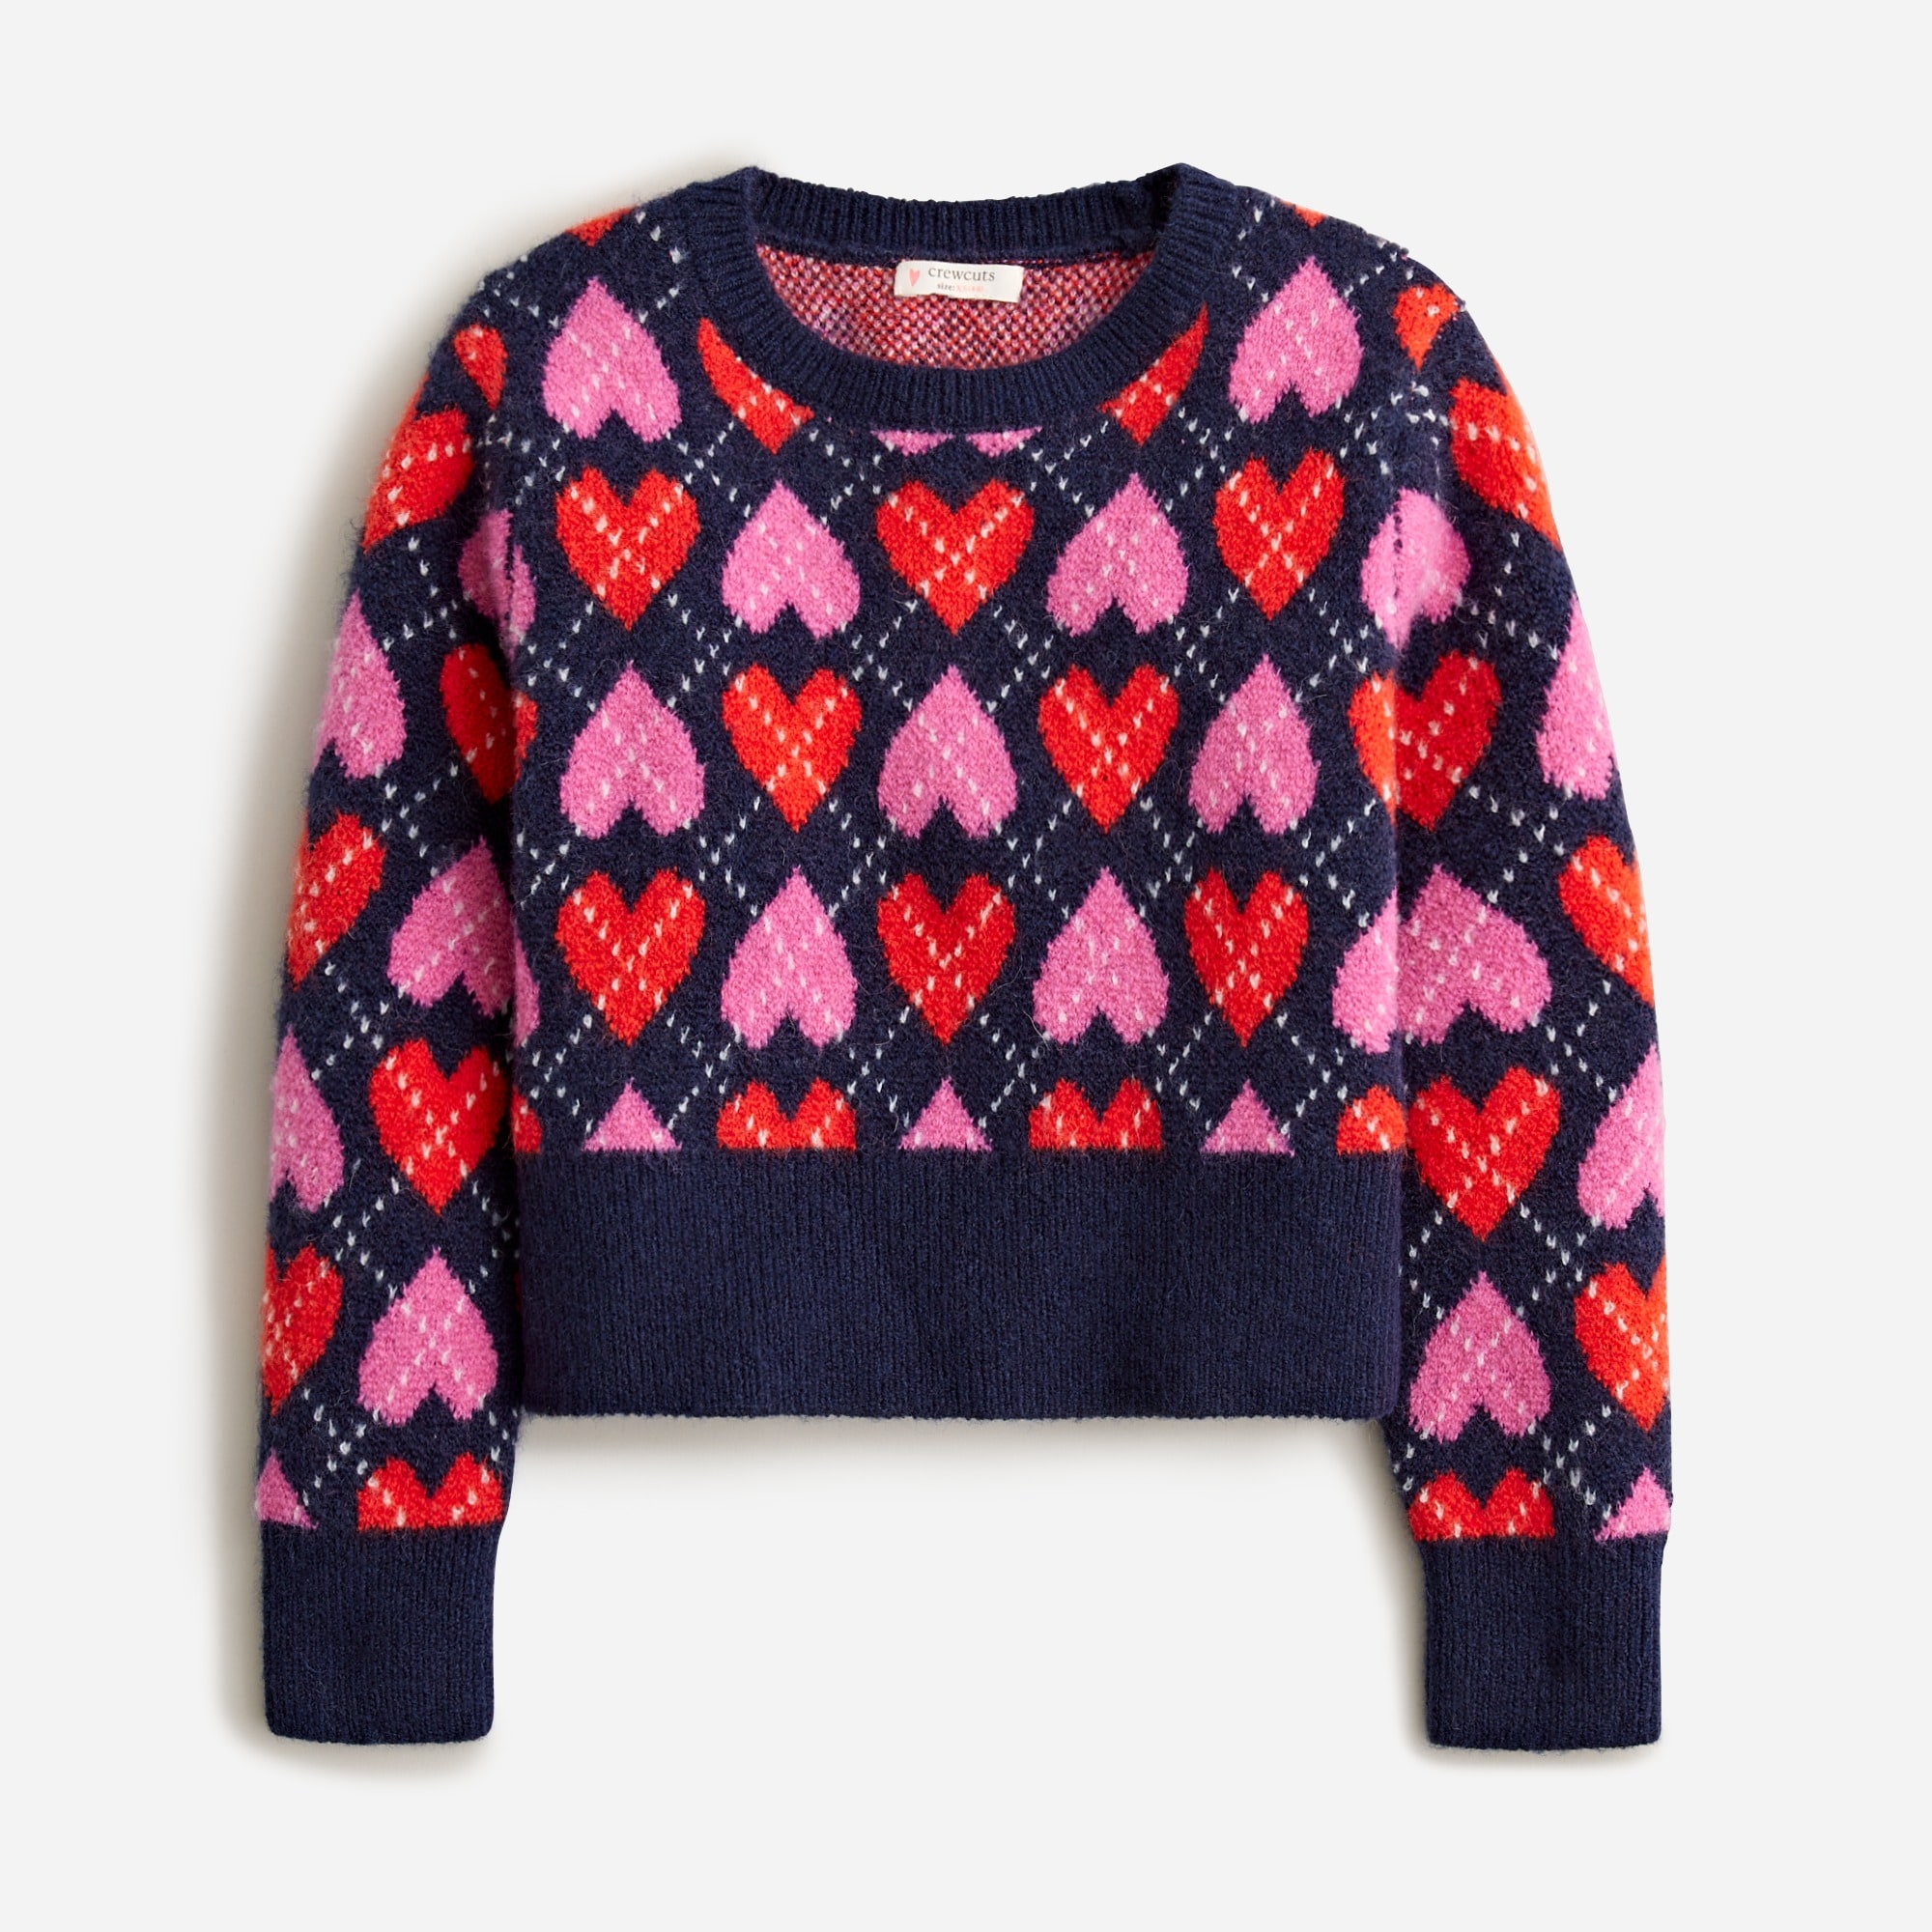  Girls' heart argyle crewneck sweater in supersoft yarn